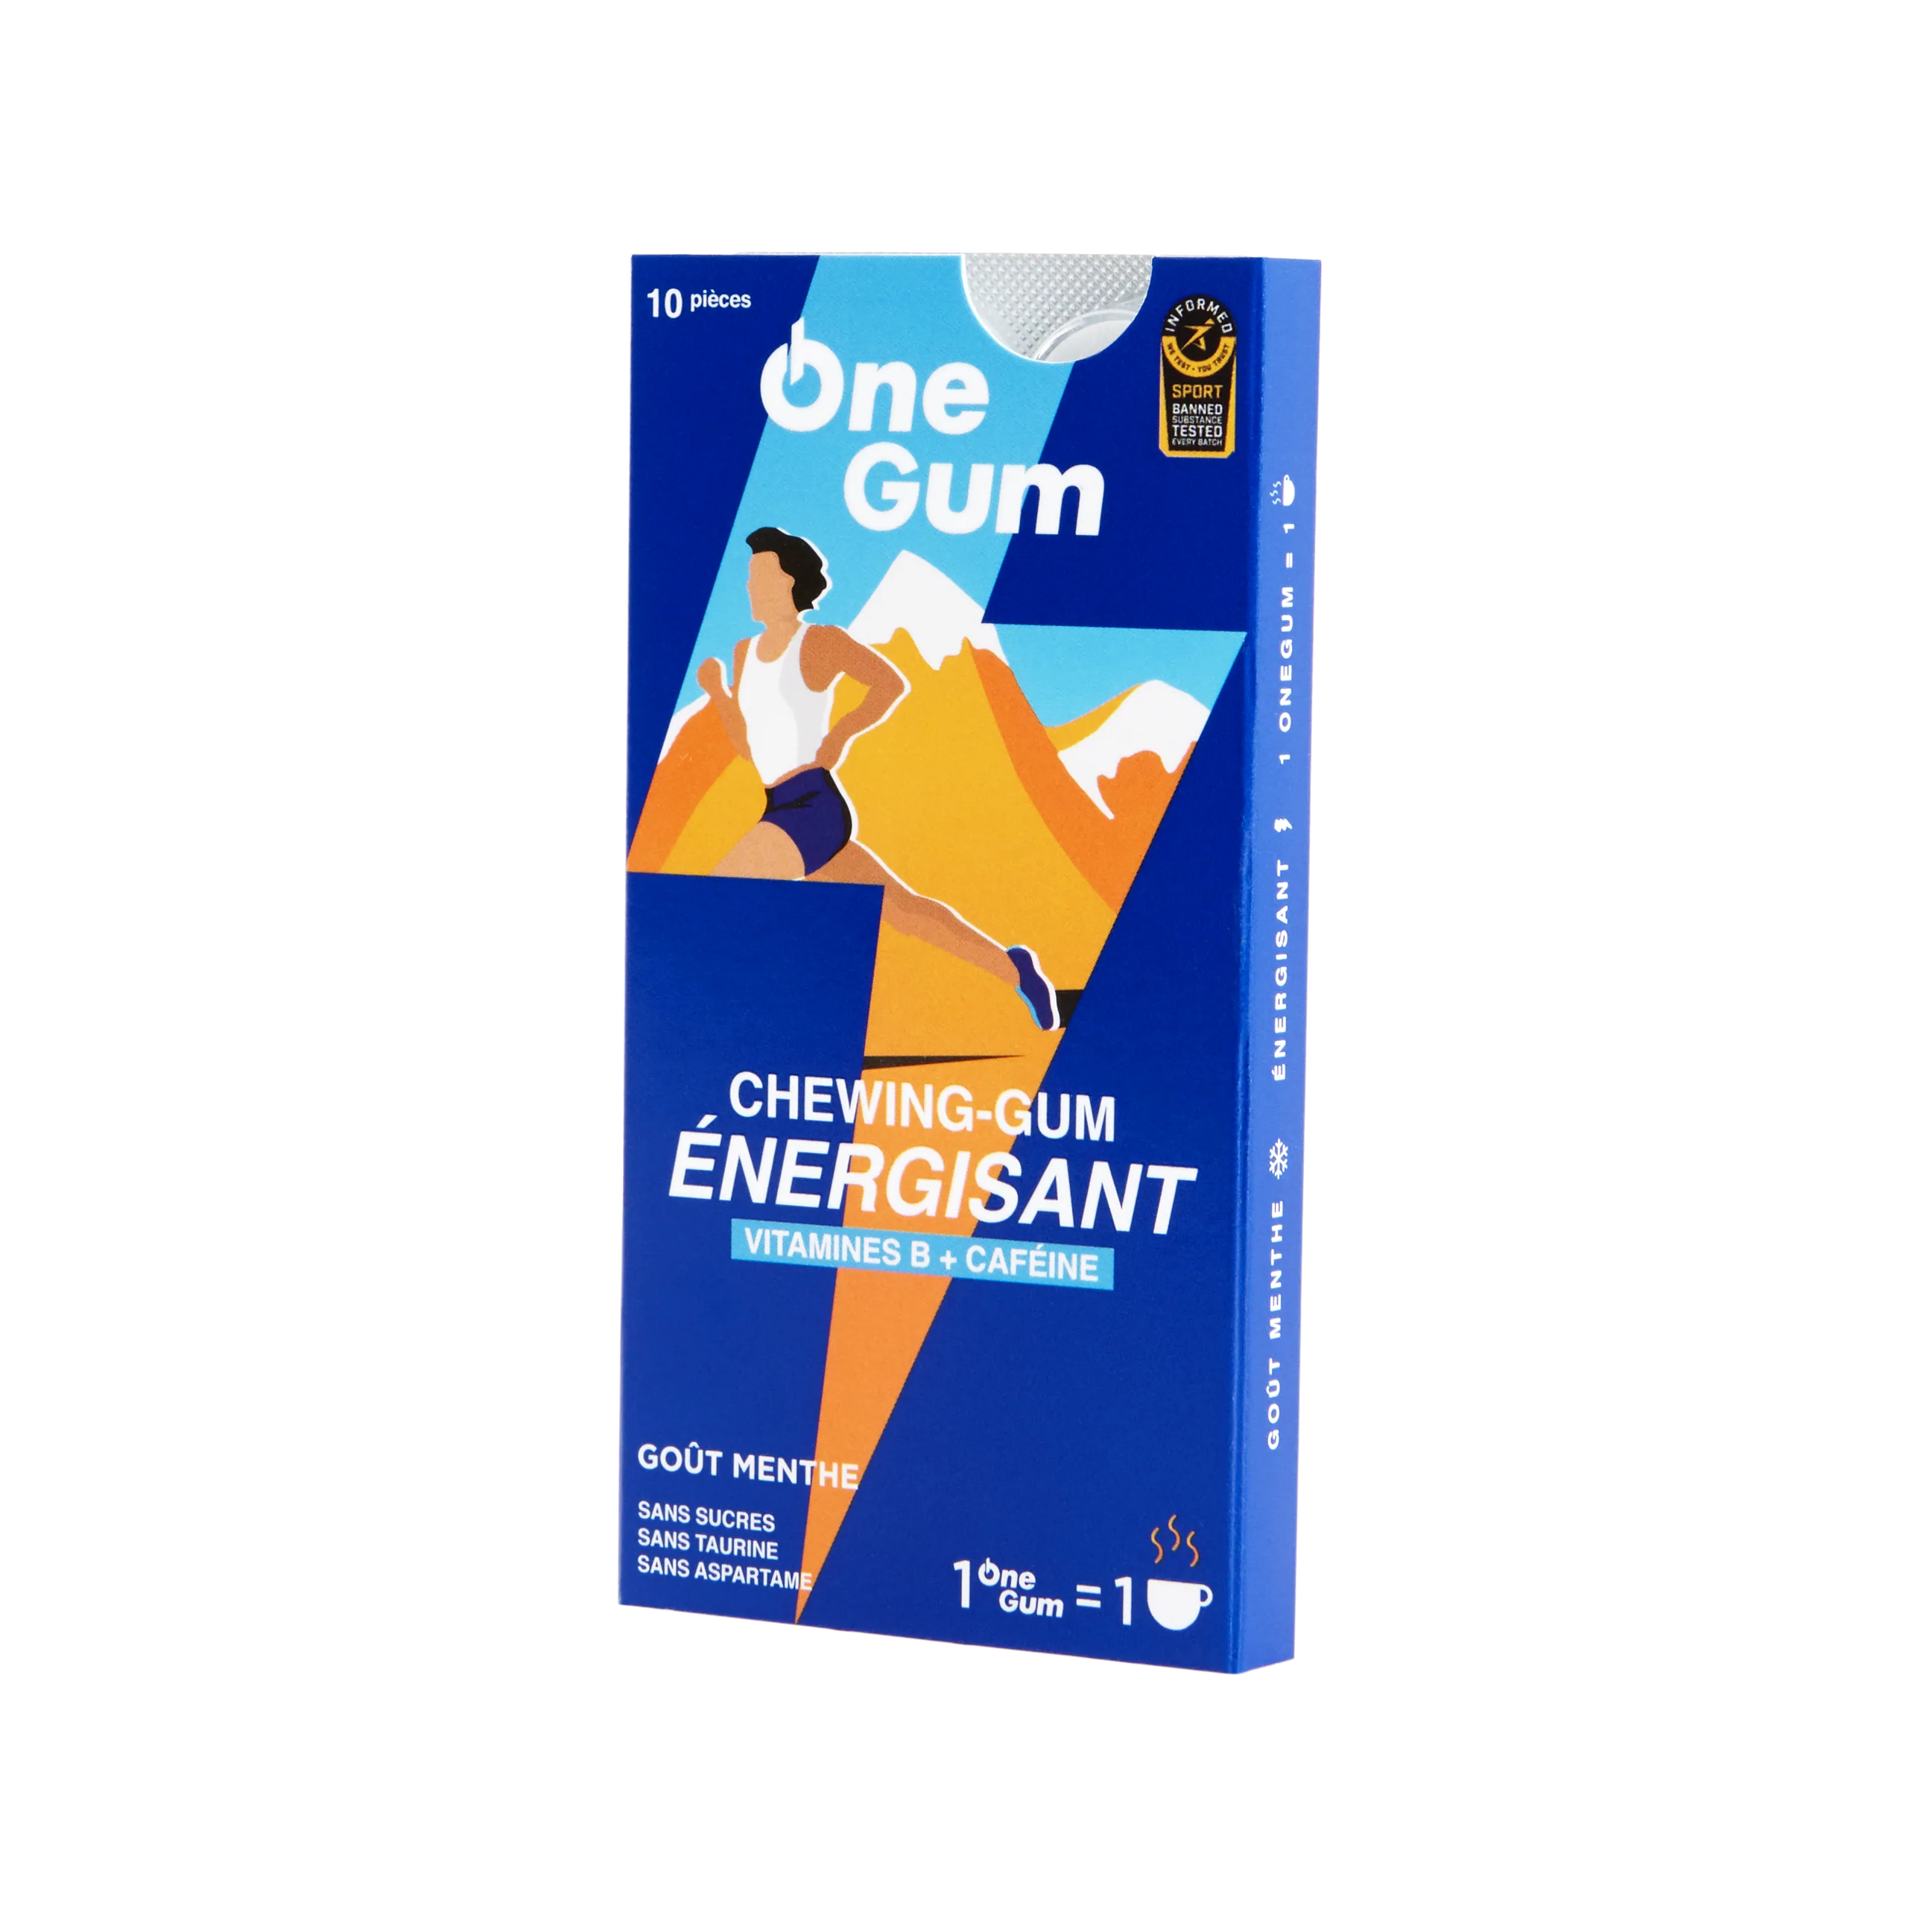 One Gum Energy Gum